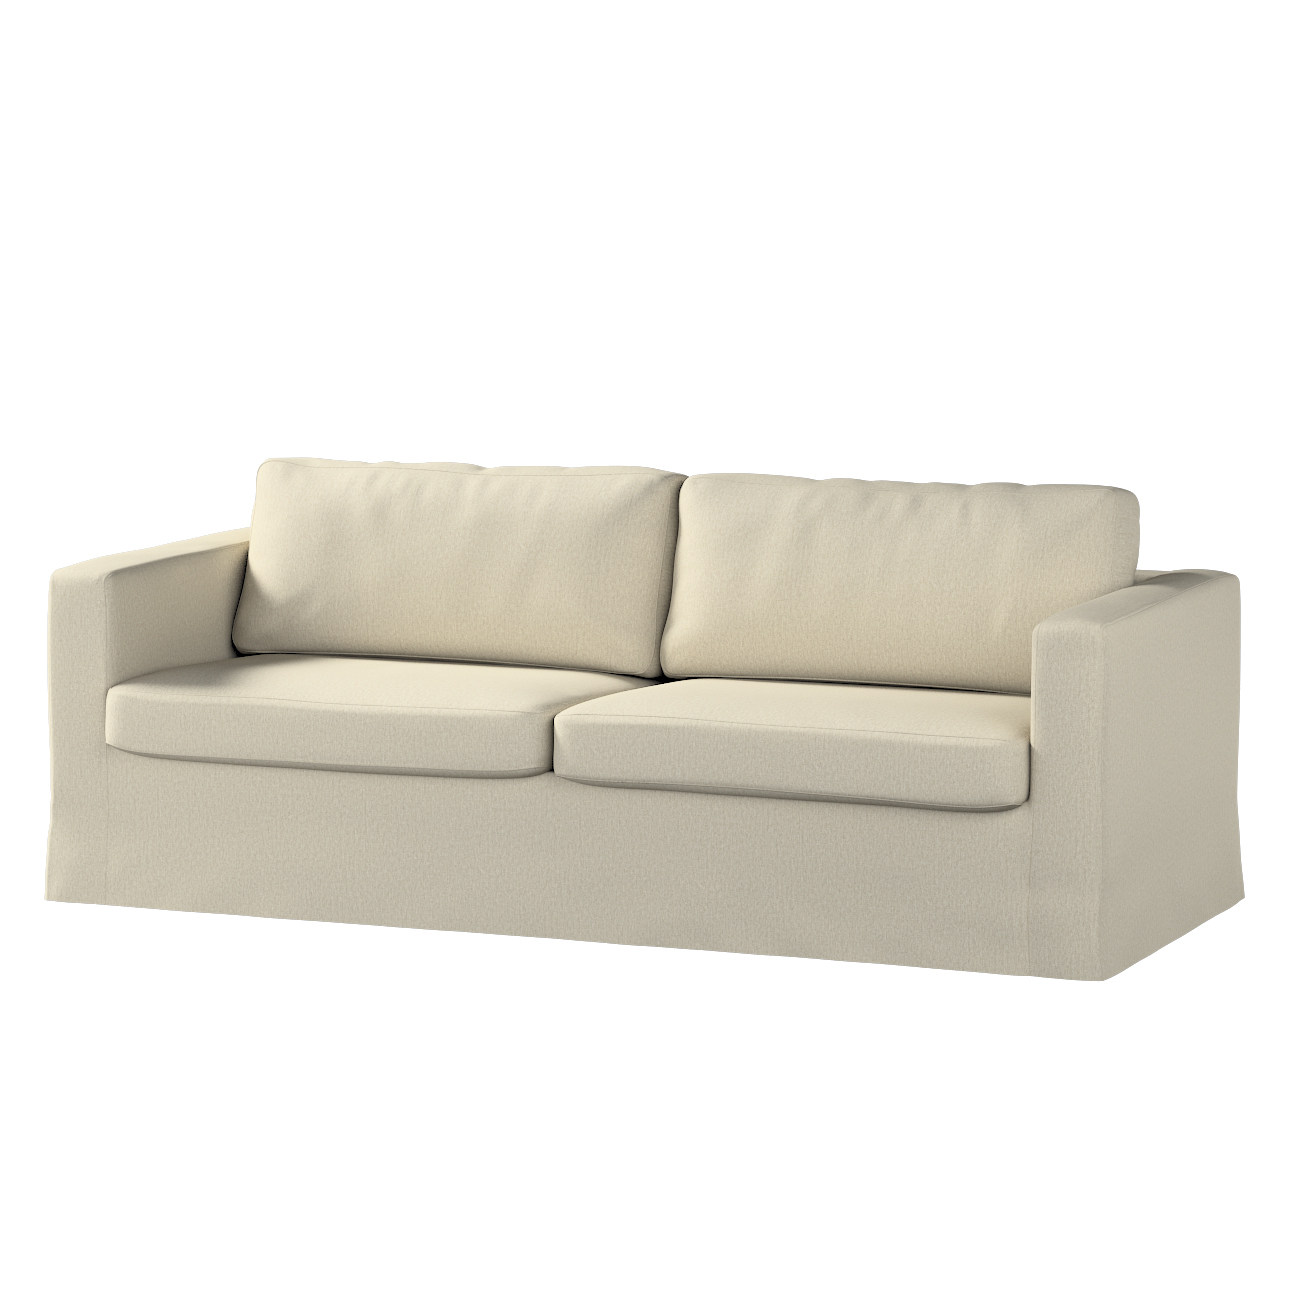 Bezug für Karlstad 3-Sitzer Sofa nicht ausklappbar, lang, beige-grau, Bezug günstig online kaufen